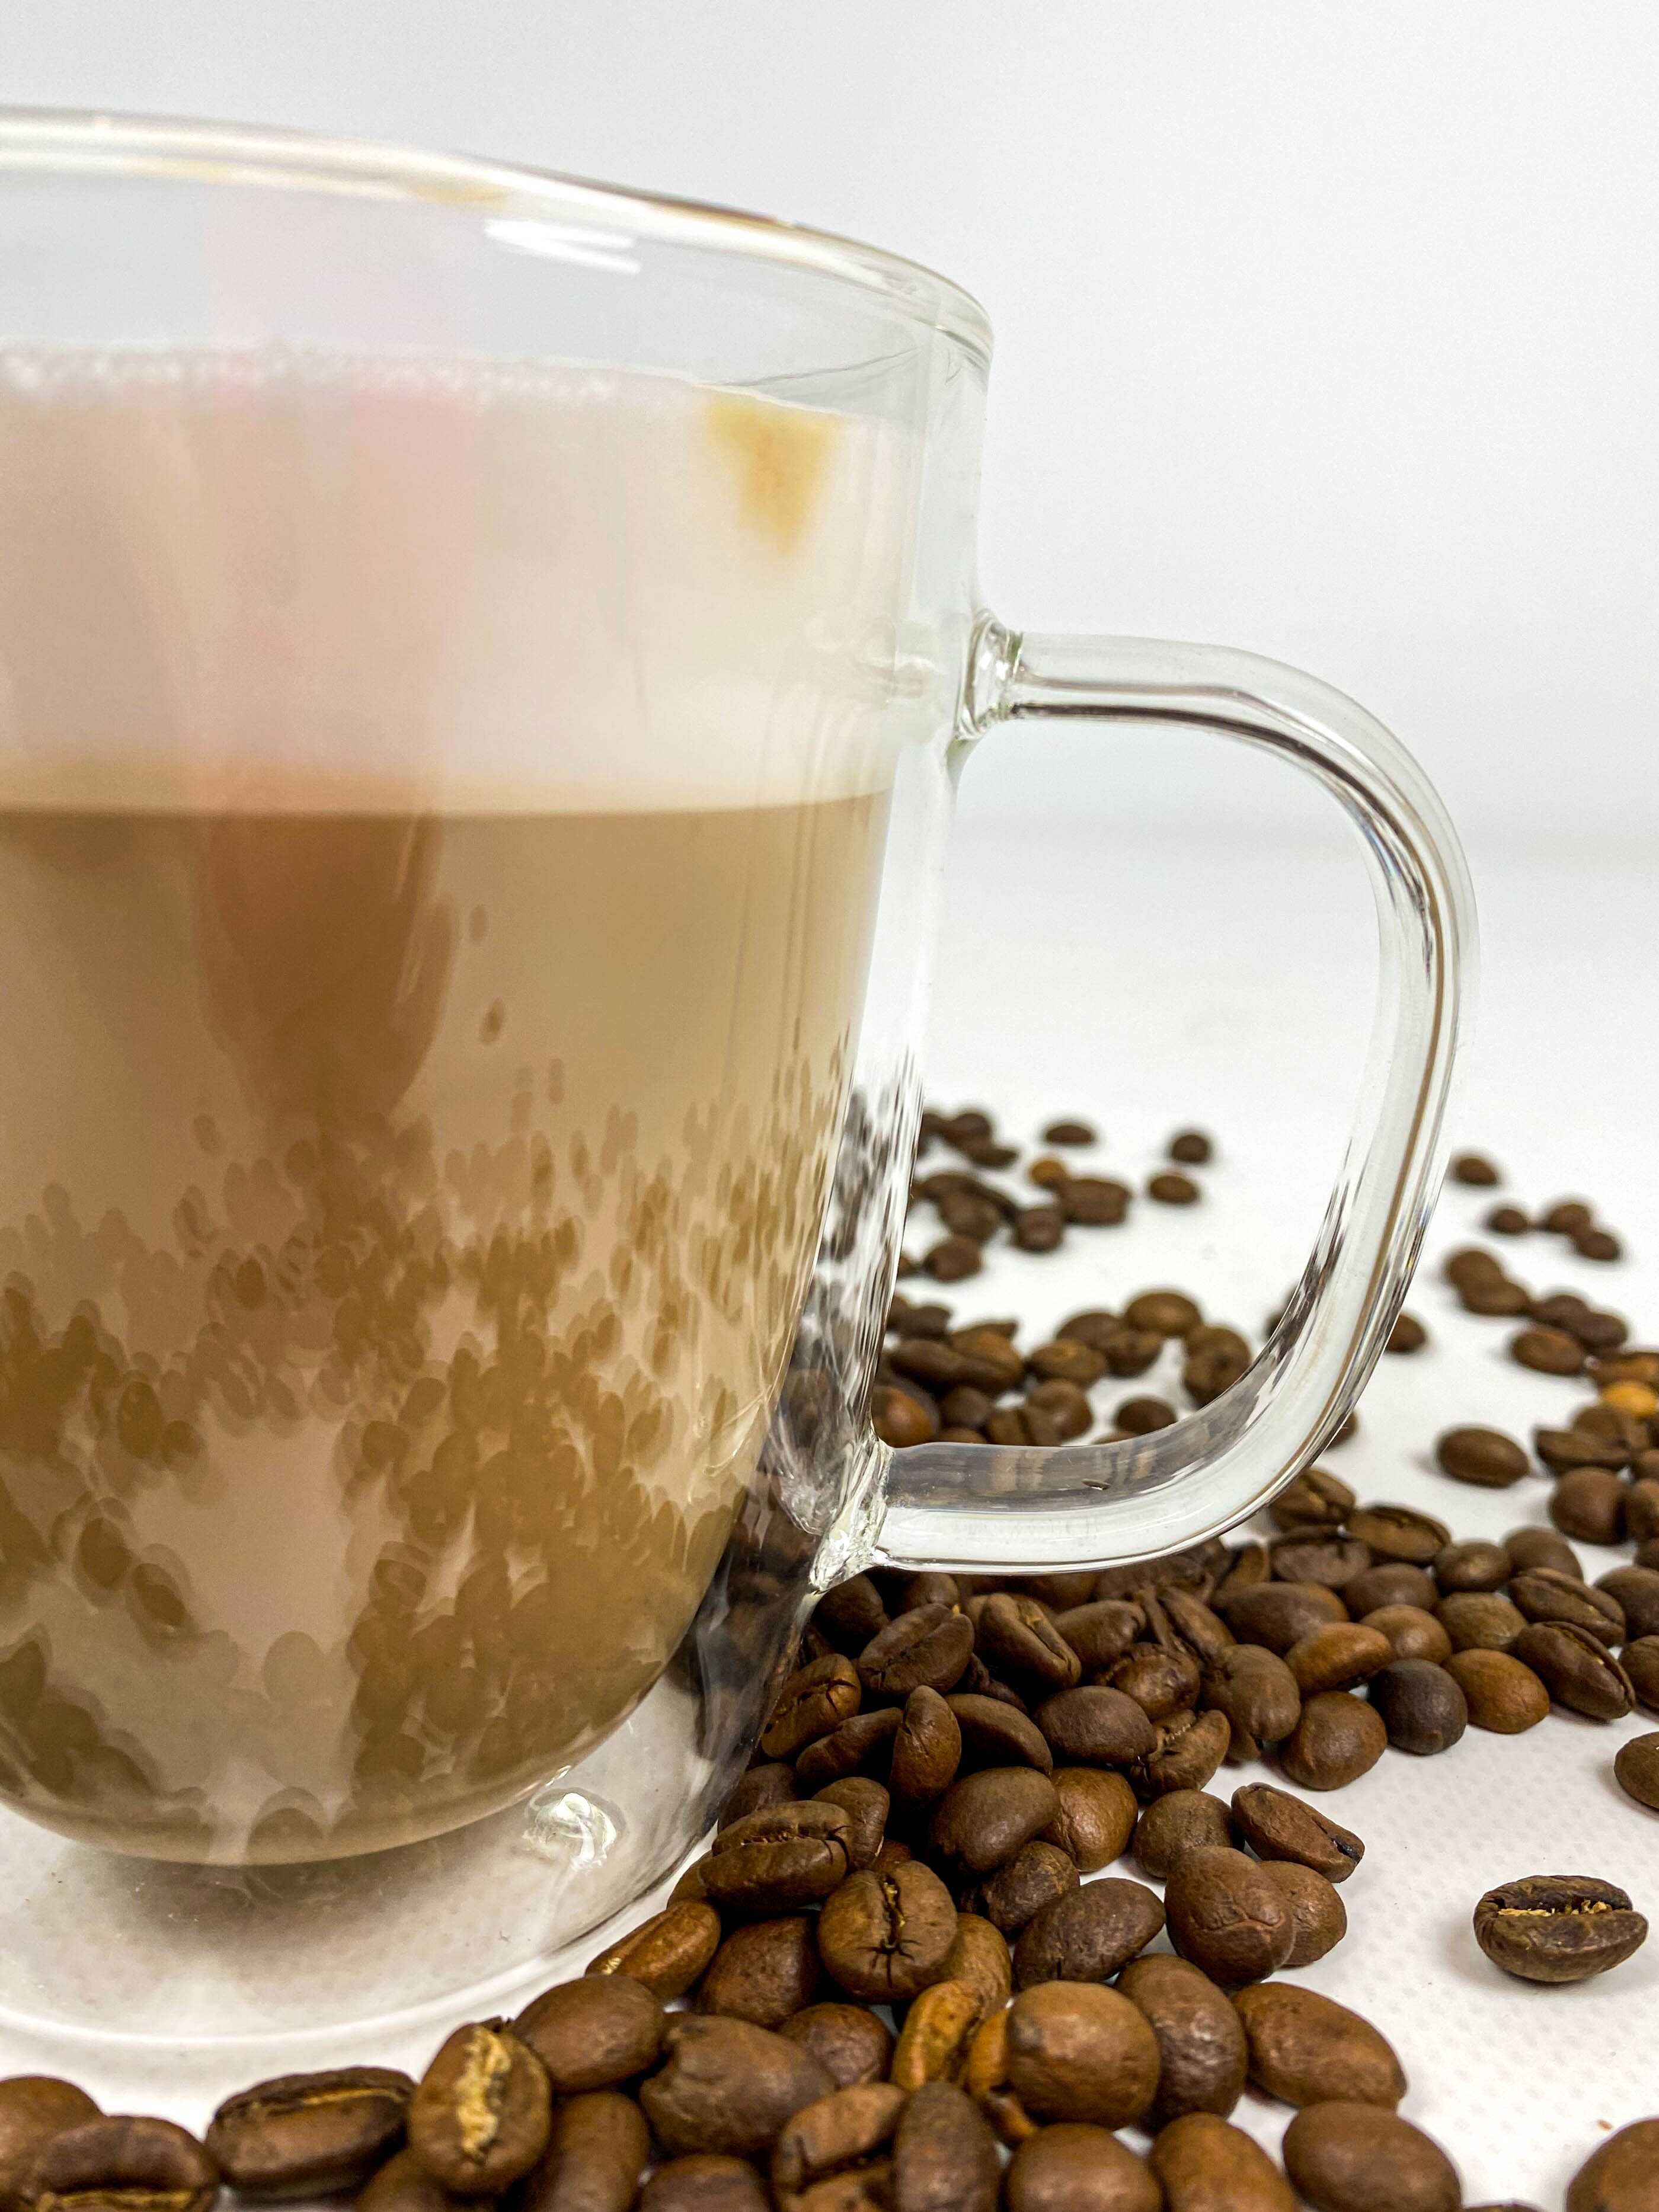 БОЖЕСТЕННЫЙ КУПАЖ кофе в зернах 60%40% свежеобжаренный опт и розница